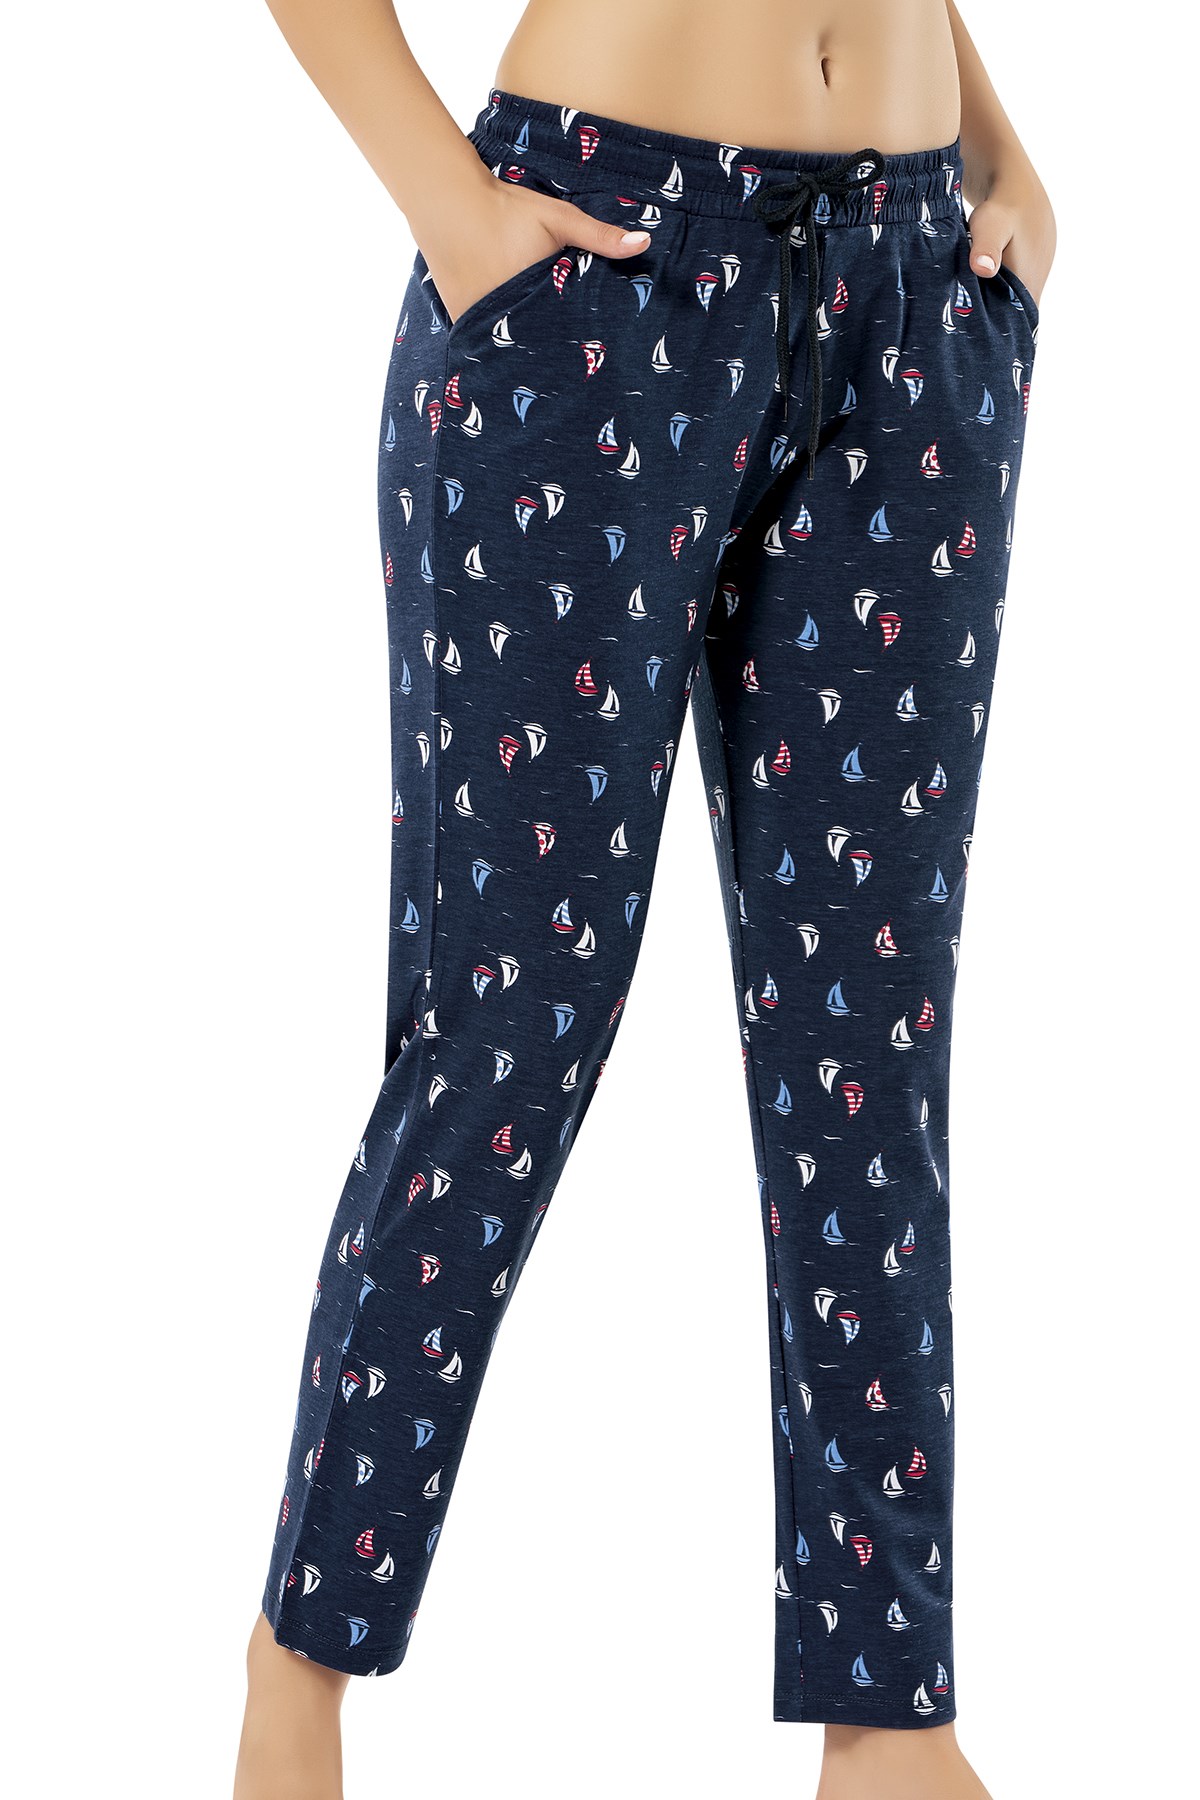 Erdem Women's Pyjama Pants